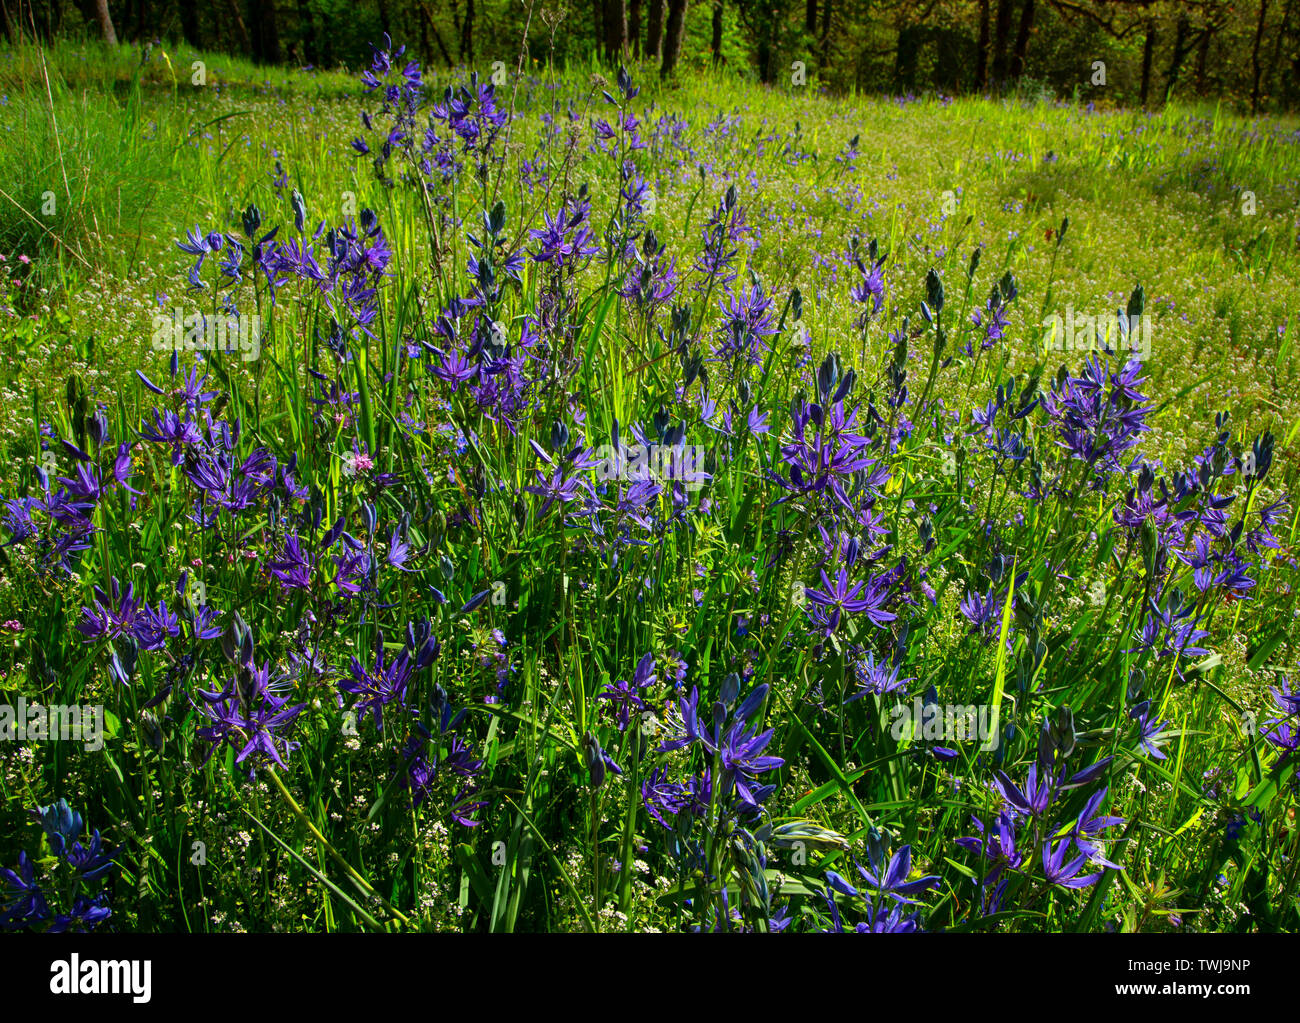 Camas (Camassia quamash), Camassia Natural Area, West Linn, Oregon Stock Photo